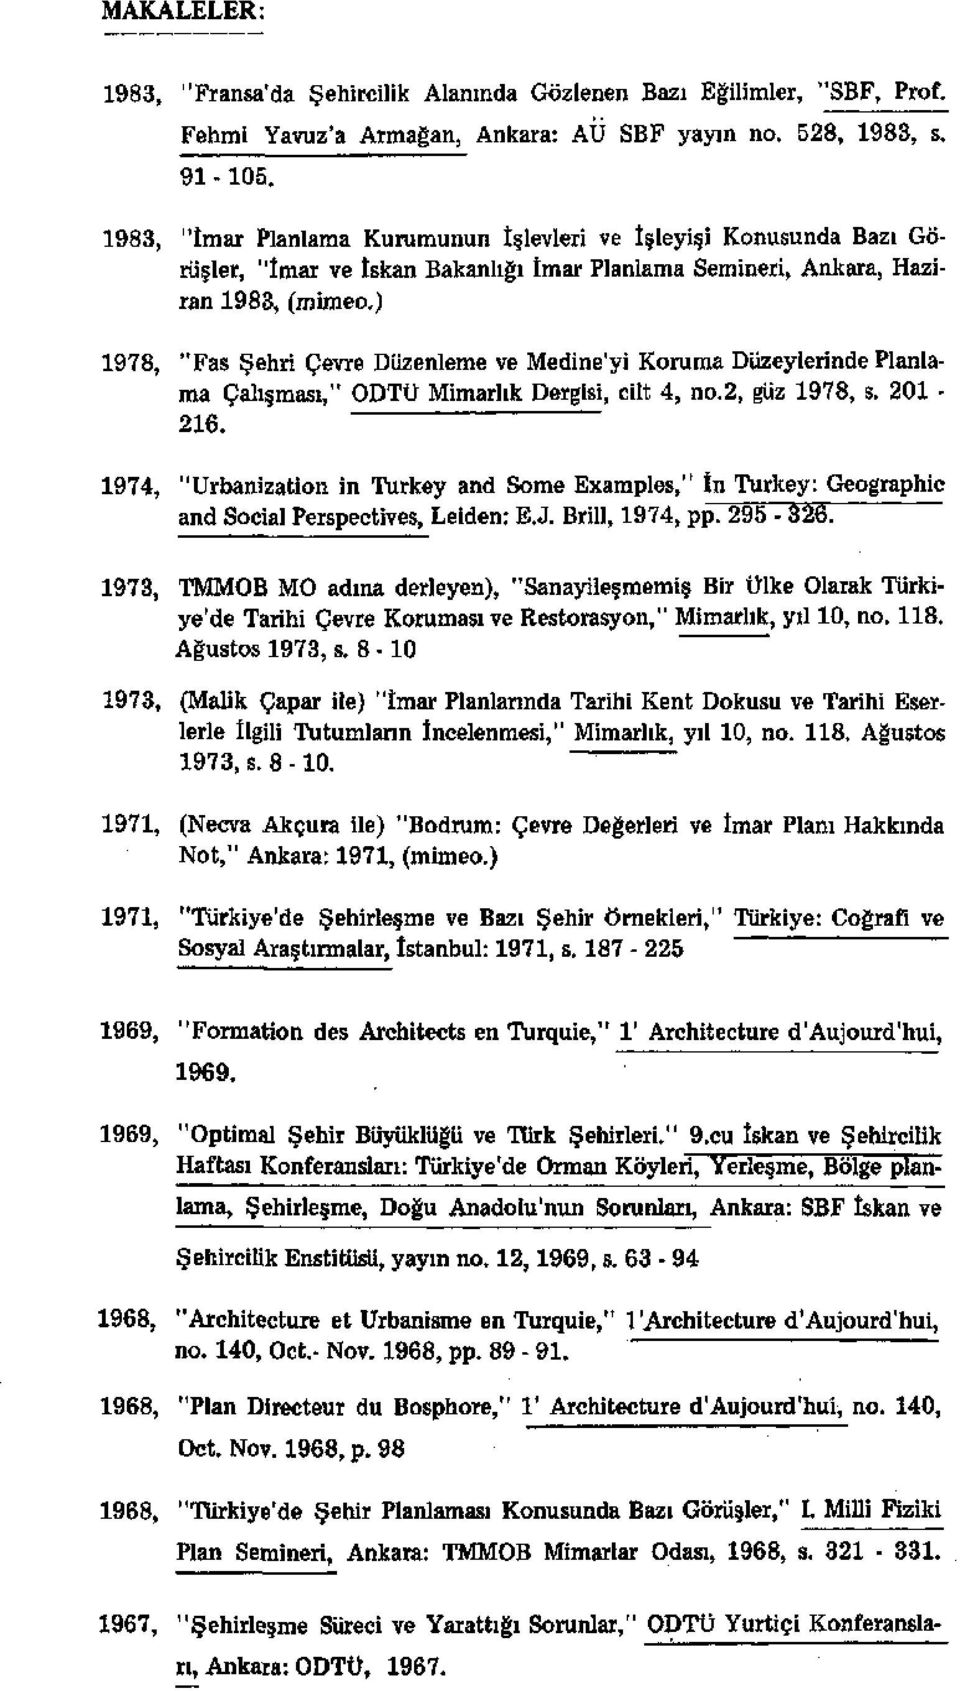 ) 1978, "Fas Şehri Çevre Düzenleme ve Medine'yi Koruma Düzeylerinde Planlama Çalışması," ODTÜ Mimarlık Dergisi, cilt 4, no.2, güz 1978, s. 201-216.